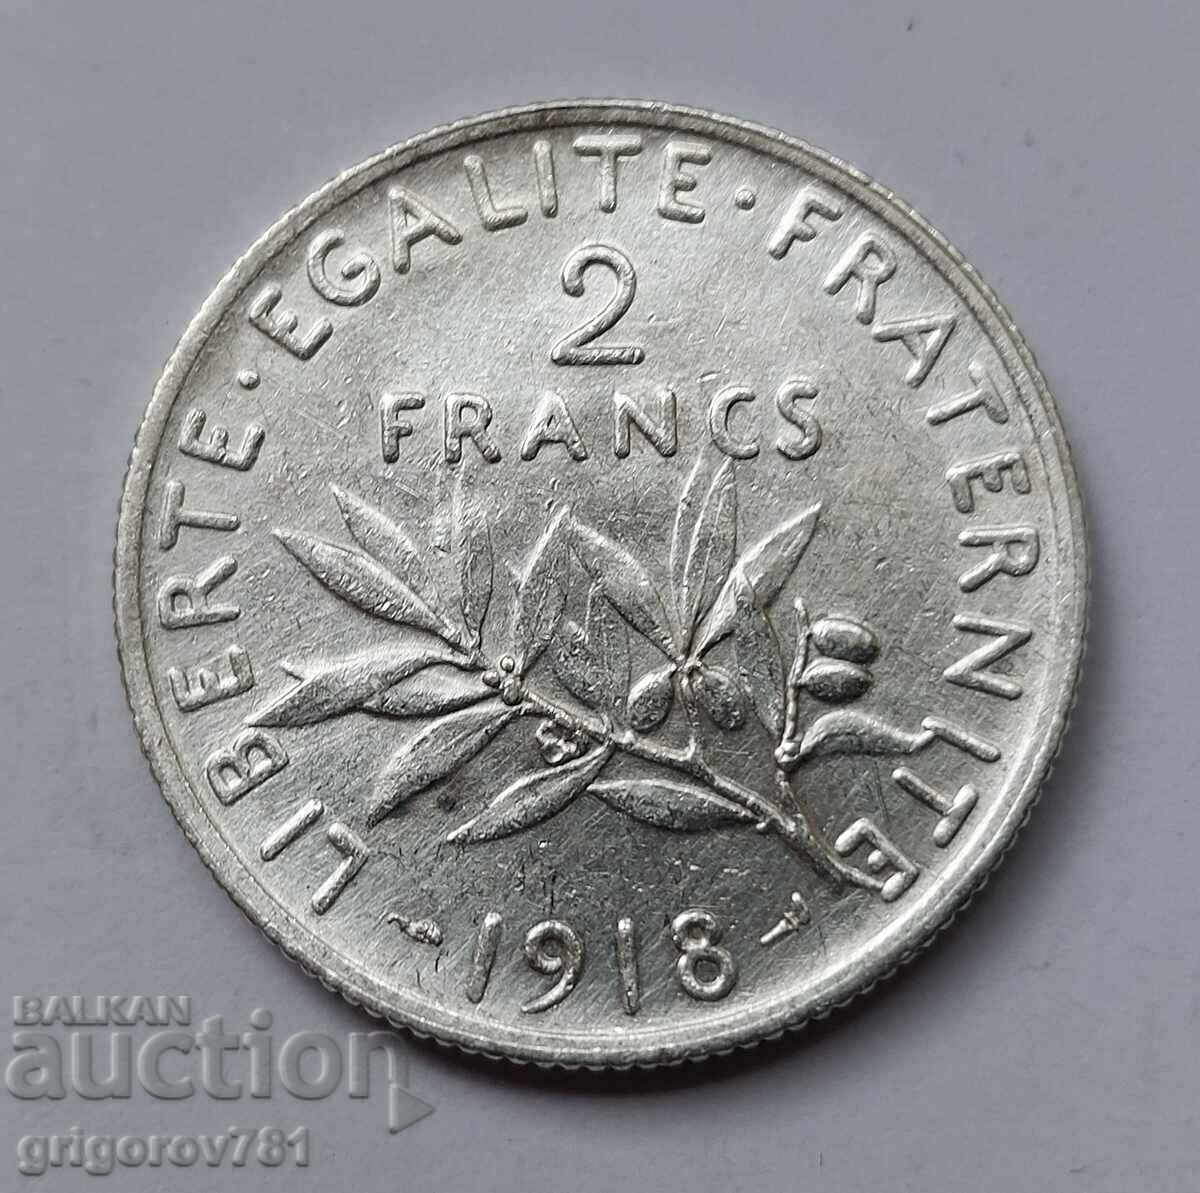 2 Franci Argint Franta 1918 - Moneda de argint #88